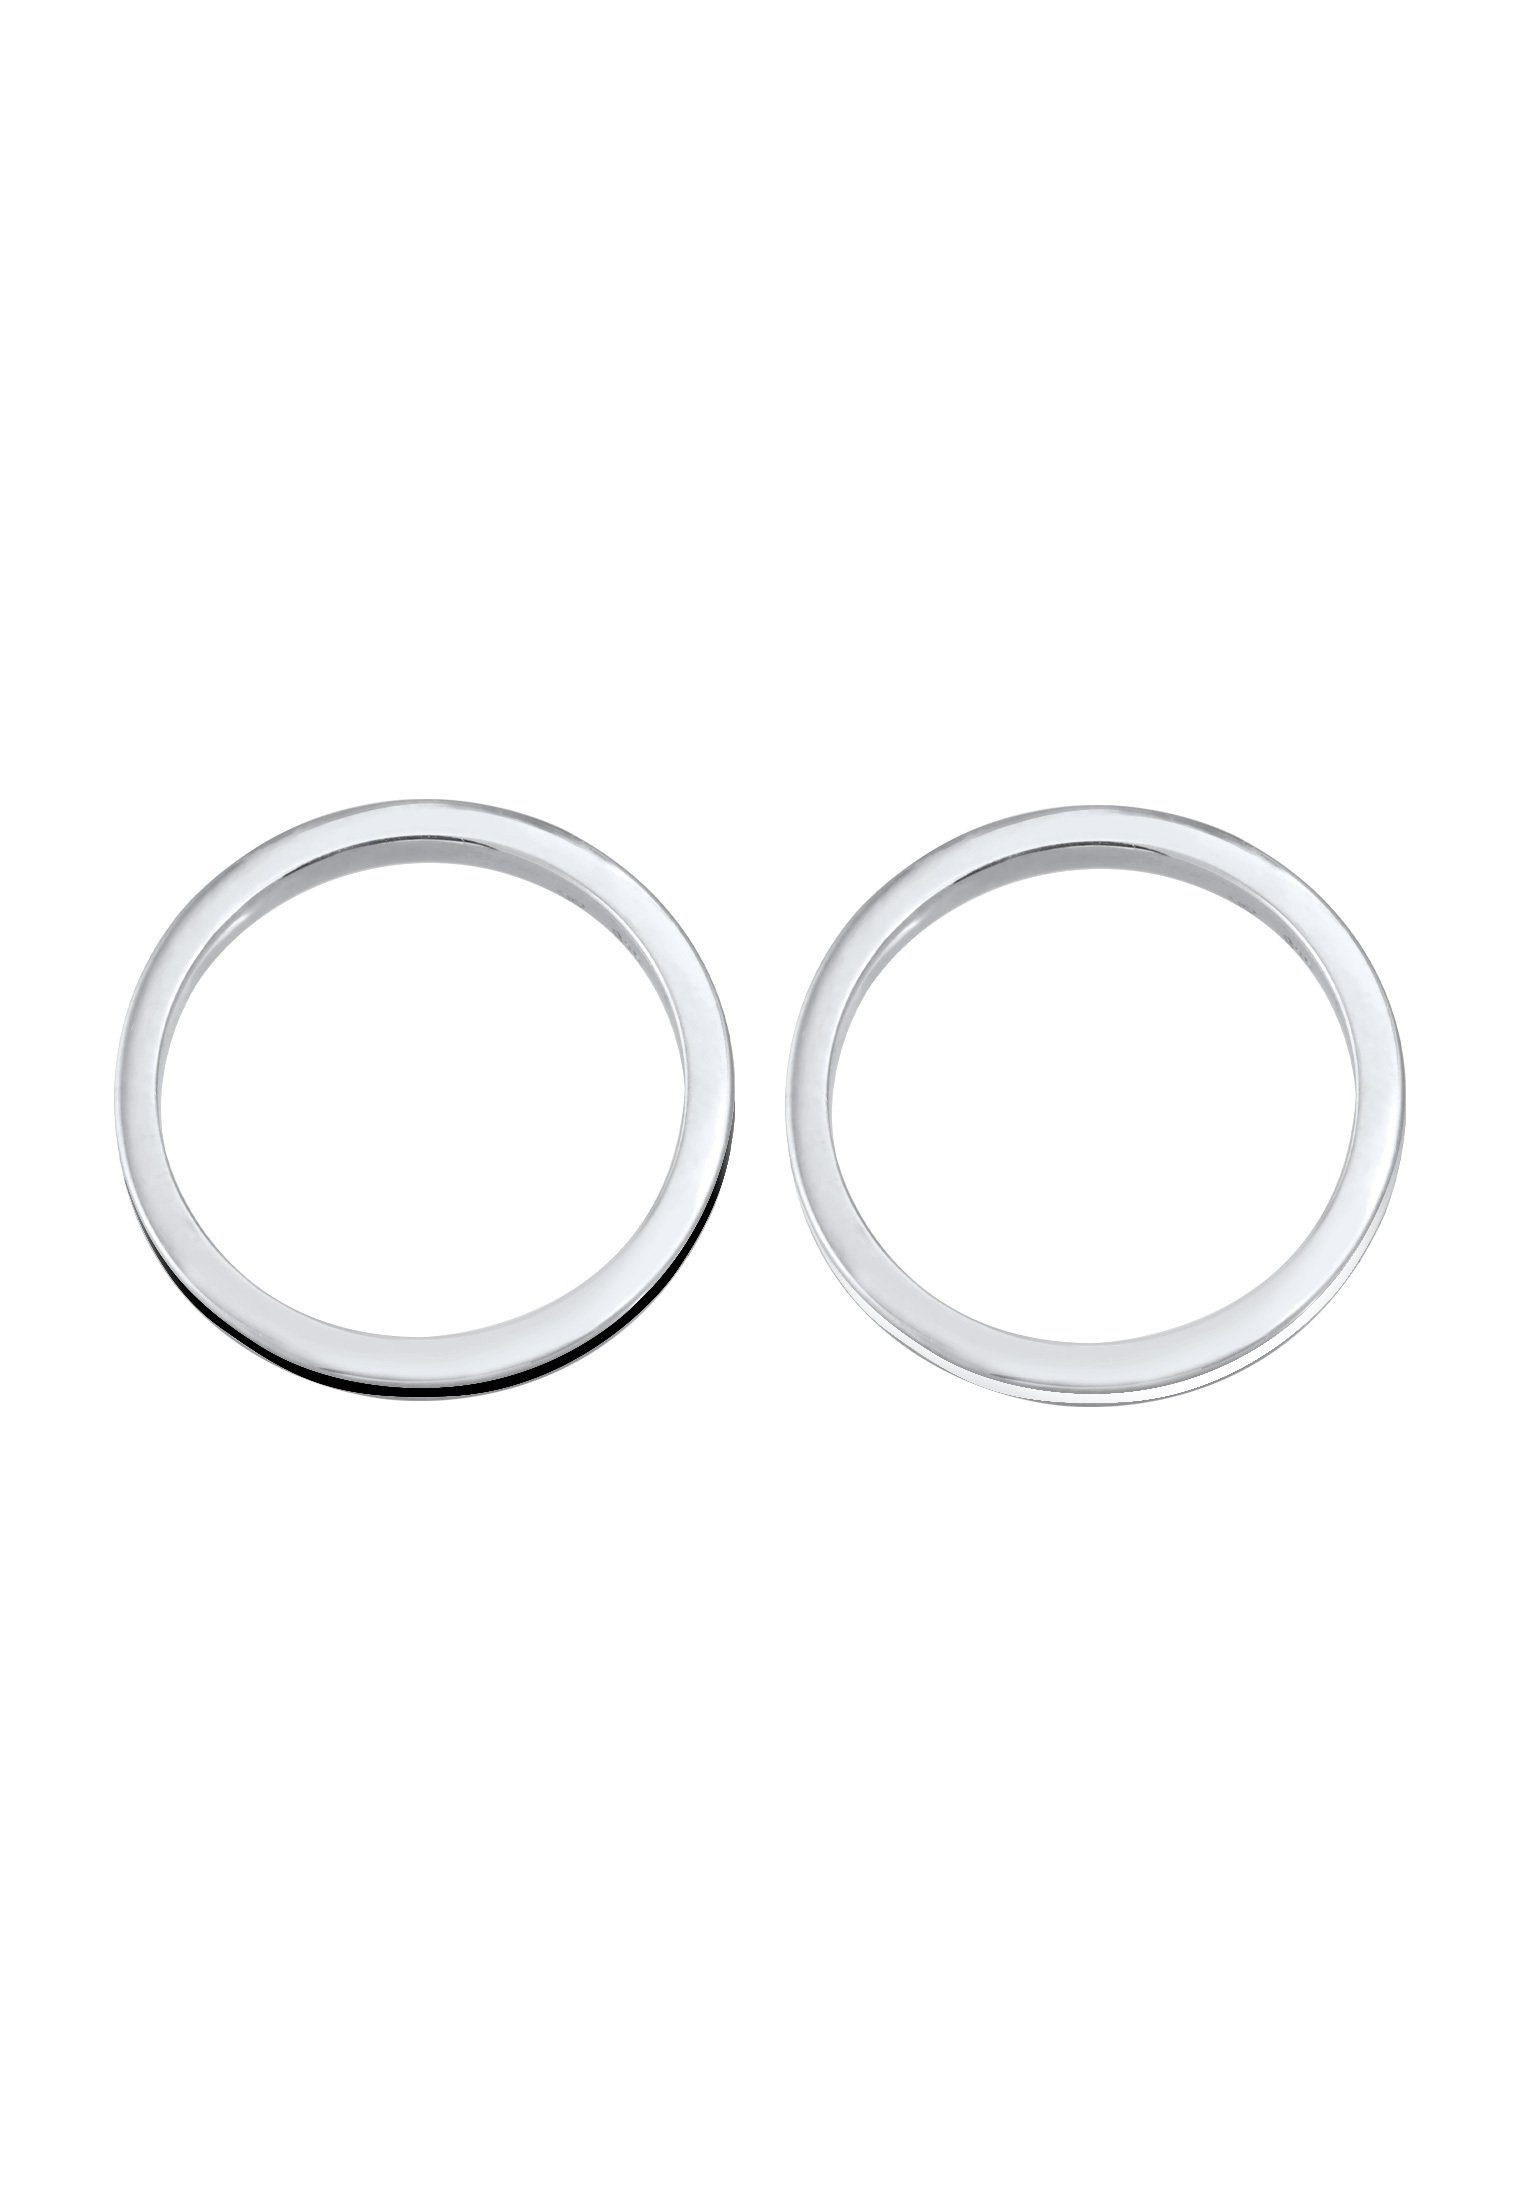 Silber Emaille Ring-Set Set 925 Basic Bandring 2er Elli